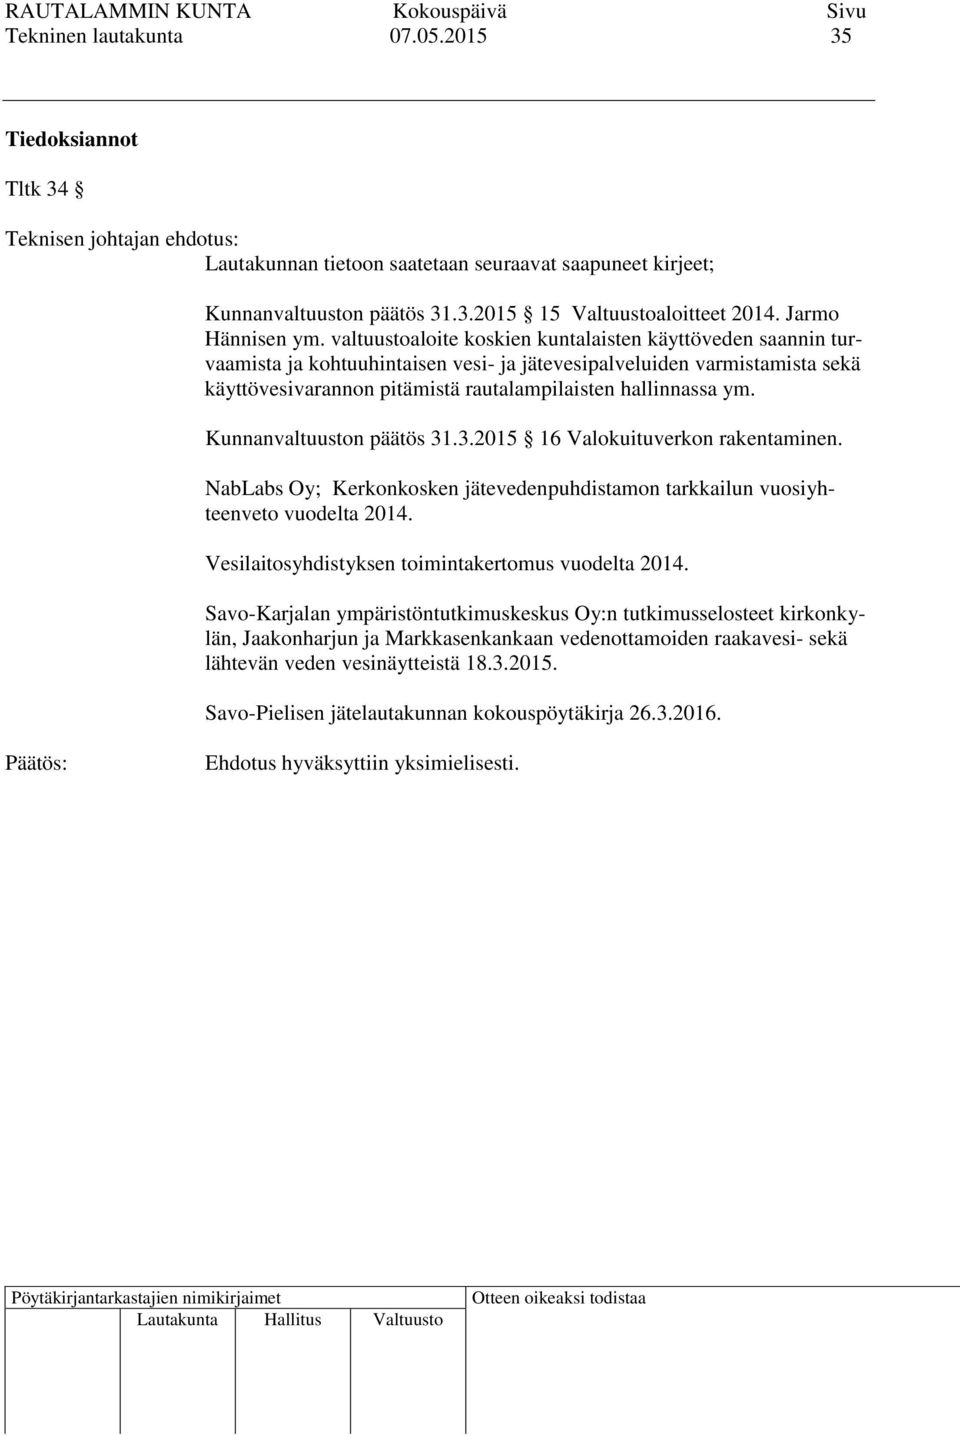 Kunnanvaltuuston päätös 31.3.2015 16 Valokuituverkon rakentaminen. NabLabs Oy; Kerkonkosken jätevedenpuhdistamon tarkkailun vuosiyhteenveto vuodelta 2014.